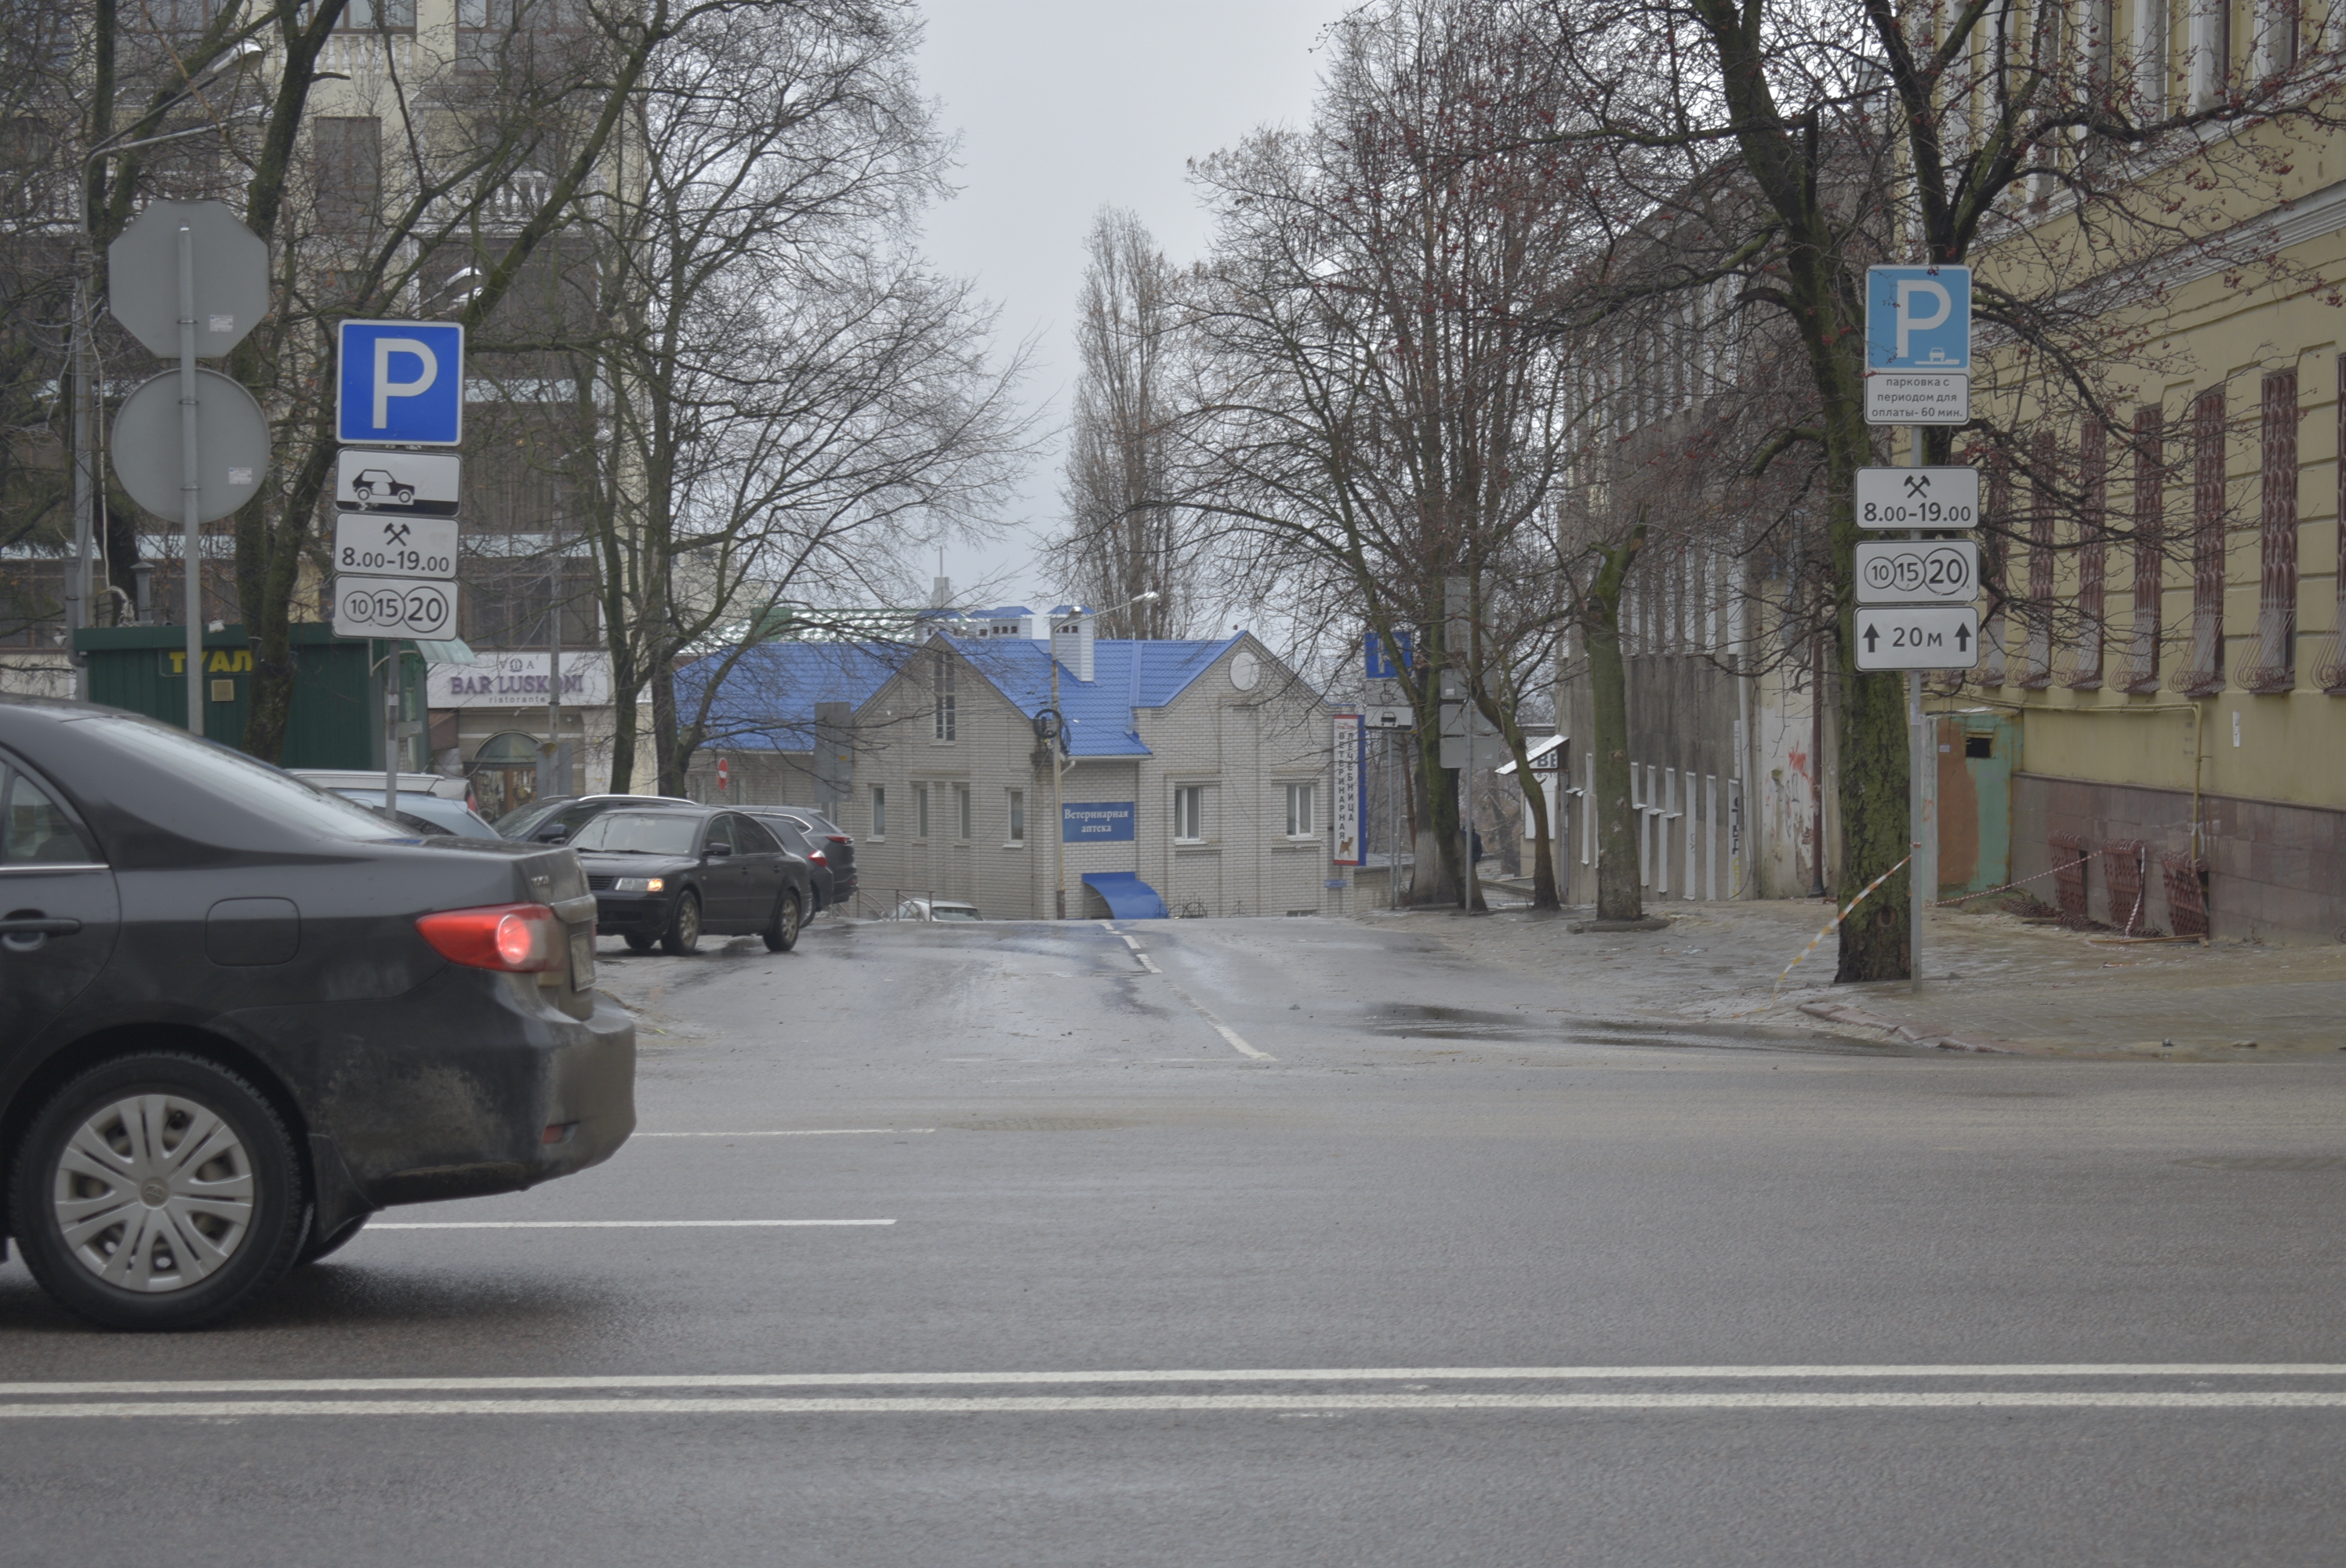 Какими методами можно решить проблему с парковками в Воронеже? - фото 4